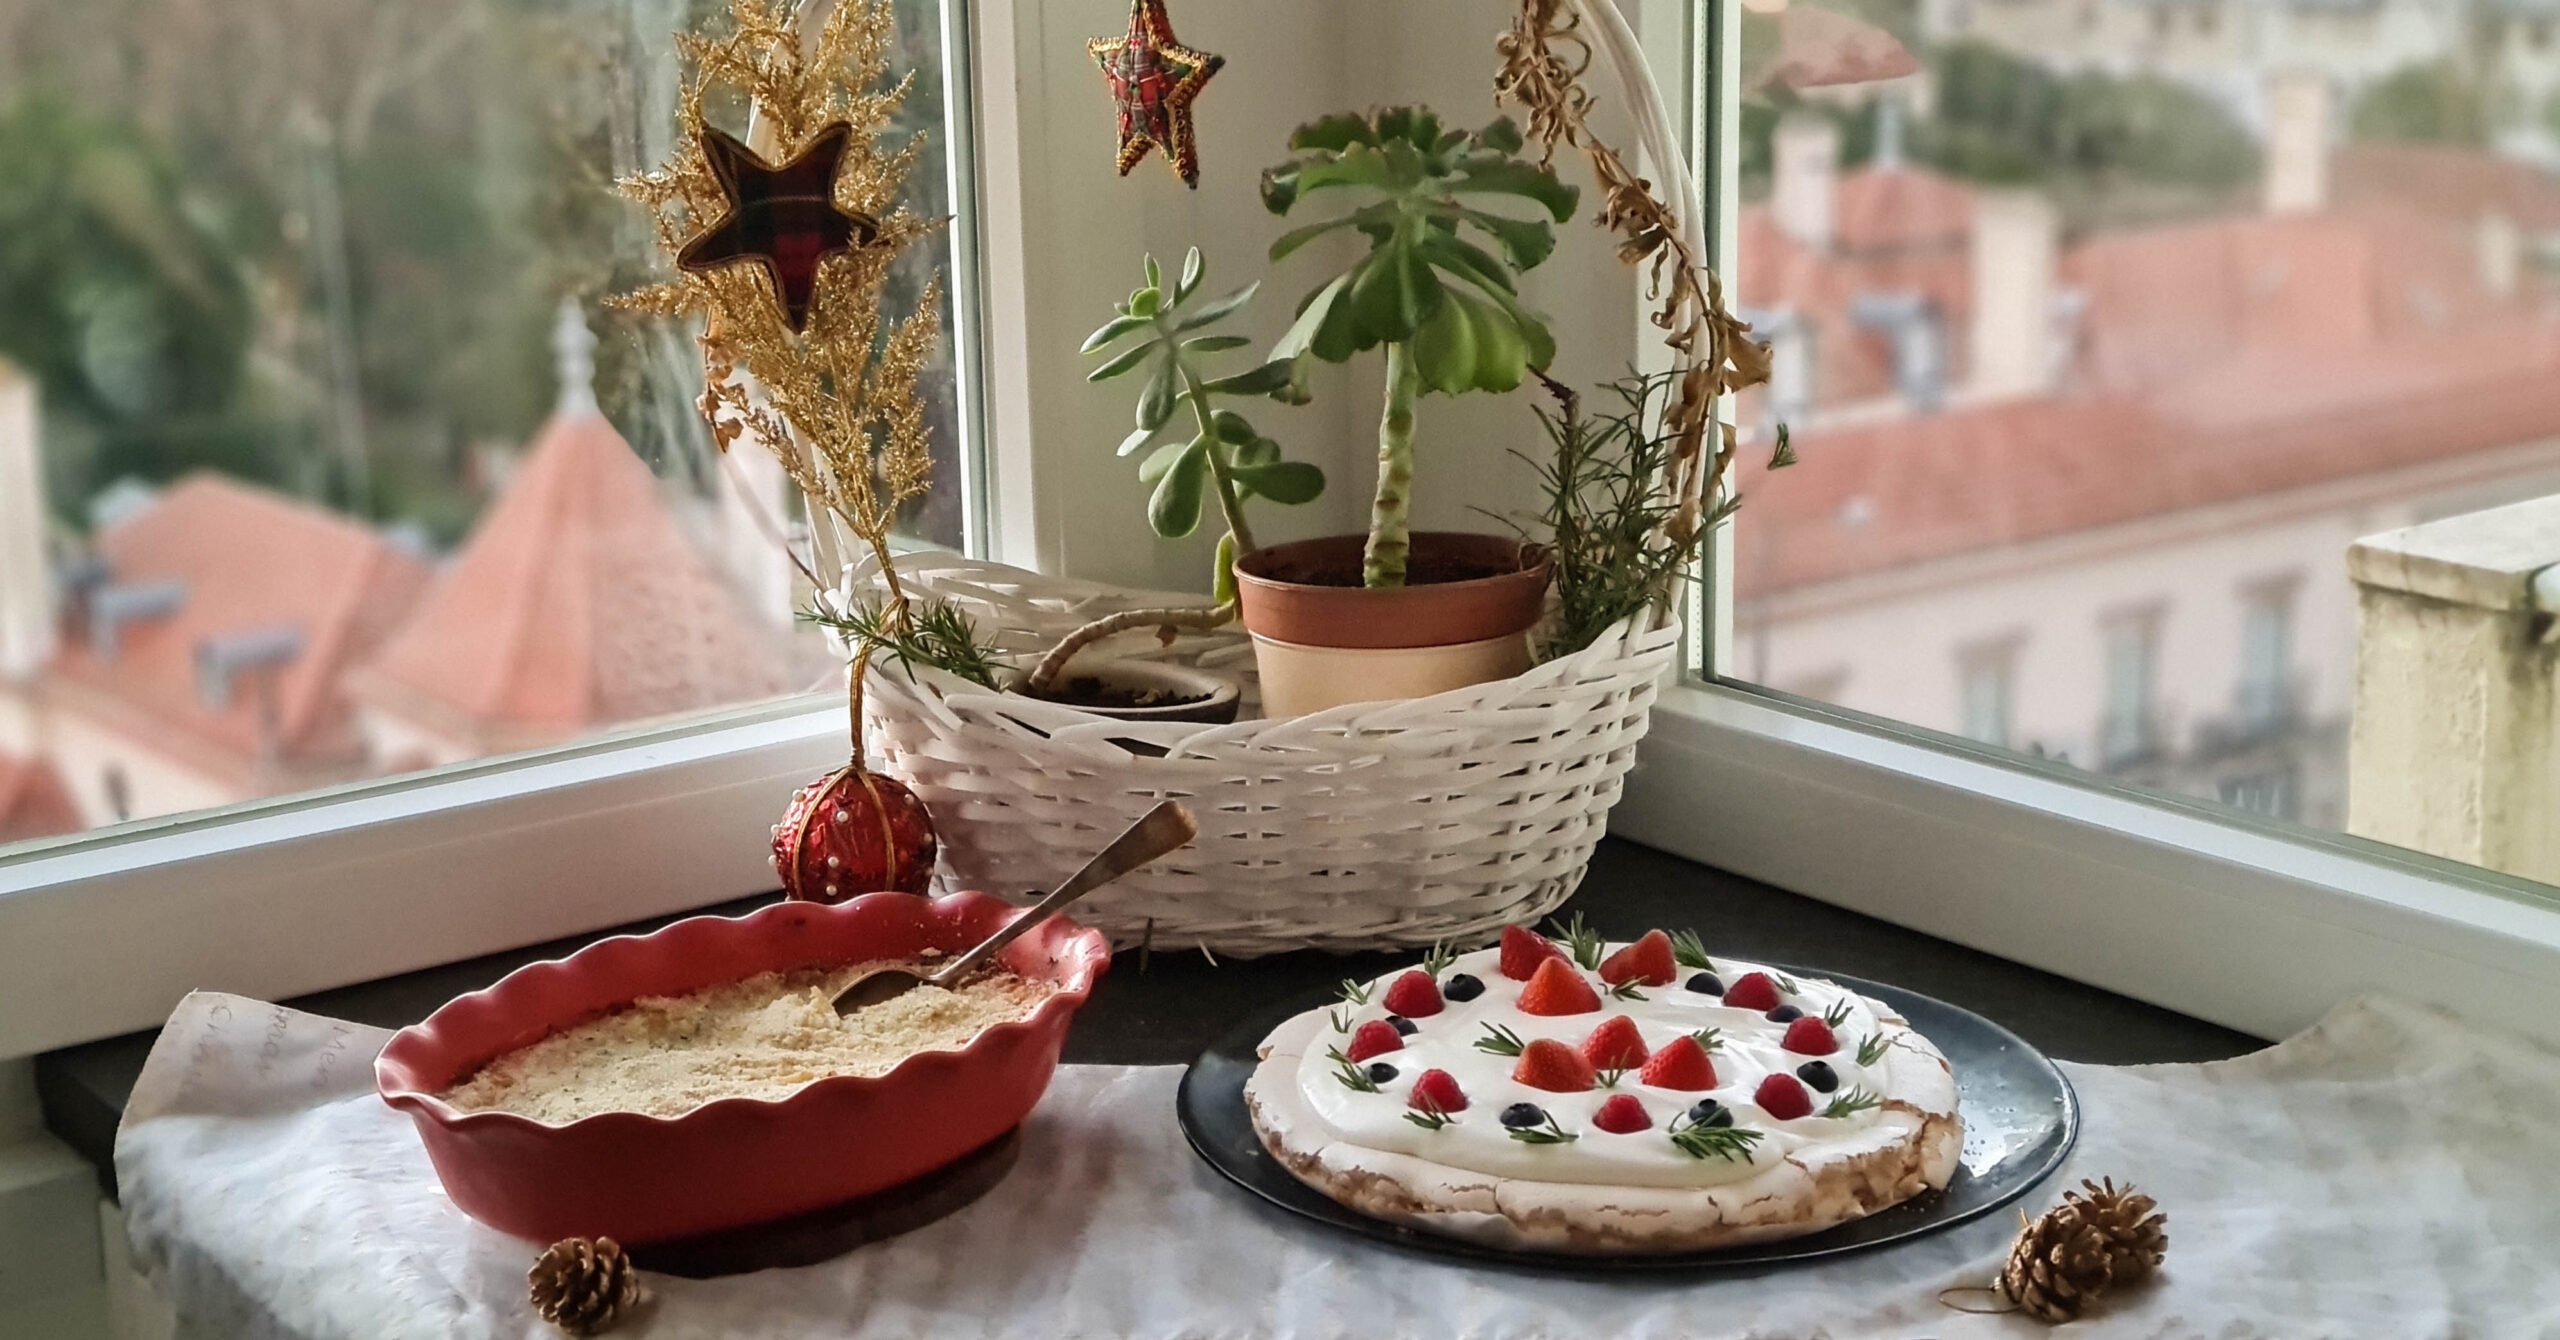 Menu de Natal Receitas de Bacalhau com Natas e Pavlova de frutos vermelhos